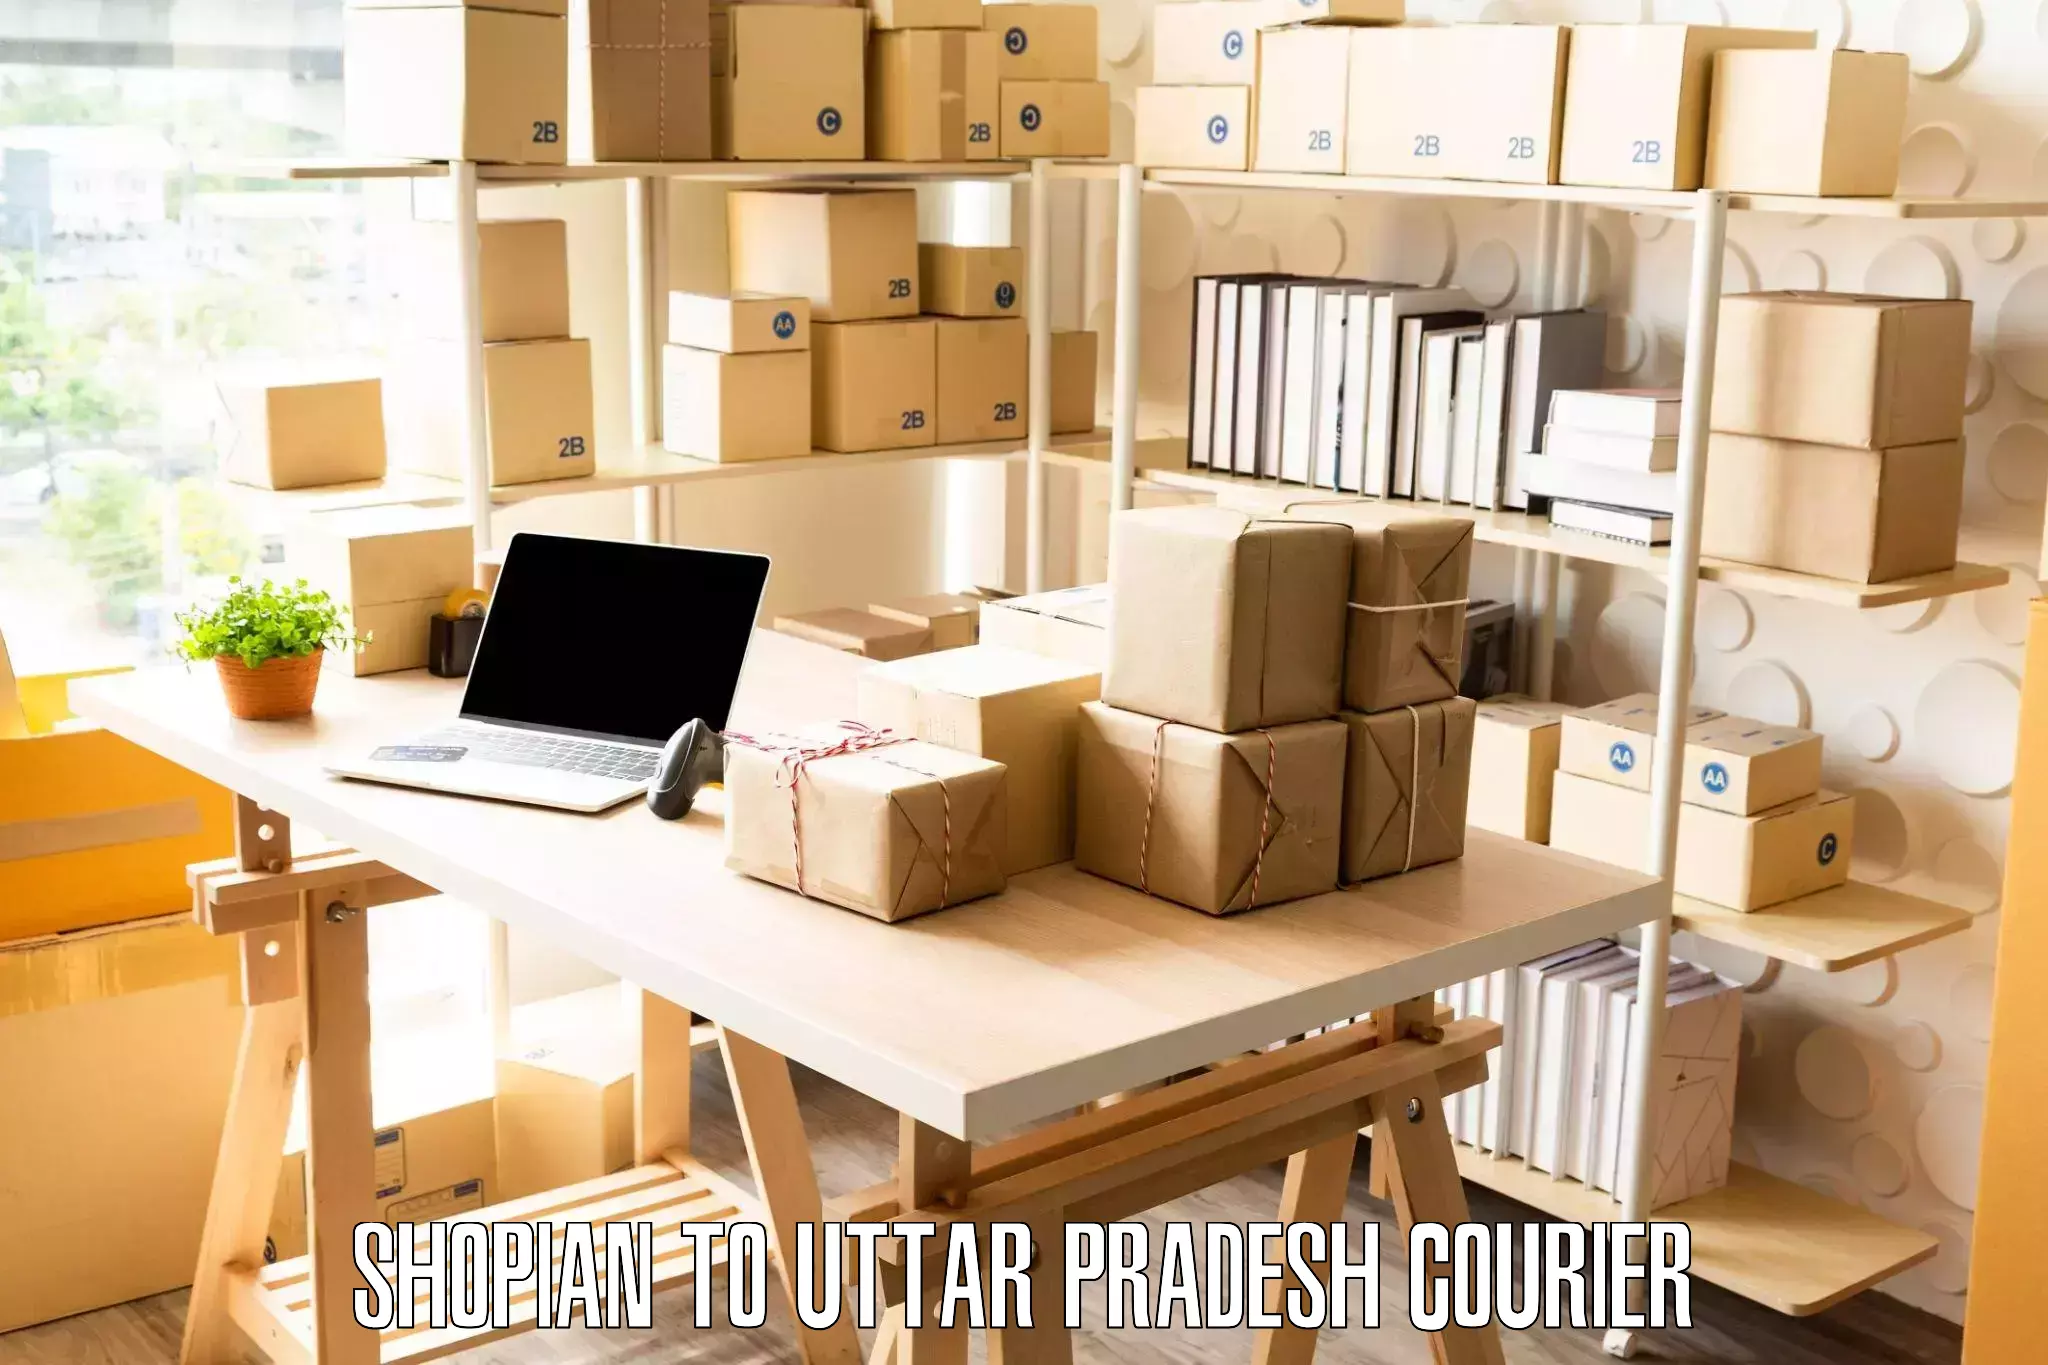 Home goods moving company Shopian to Uttar Pradesh